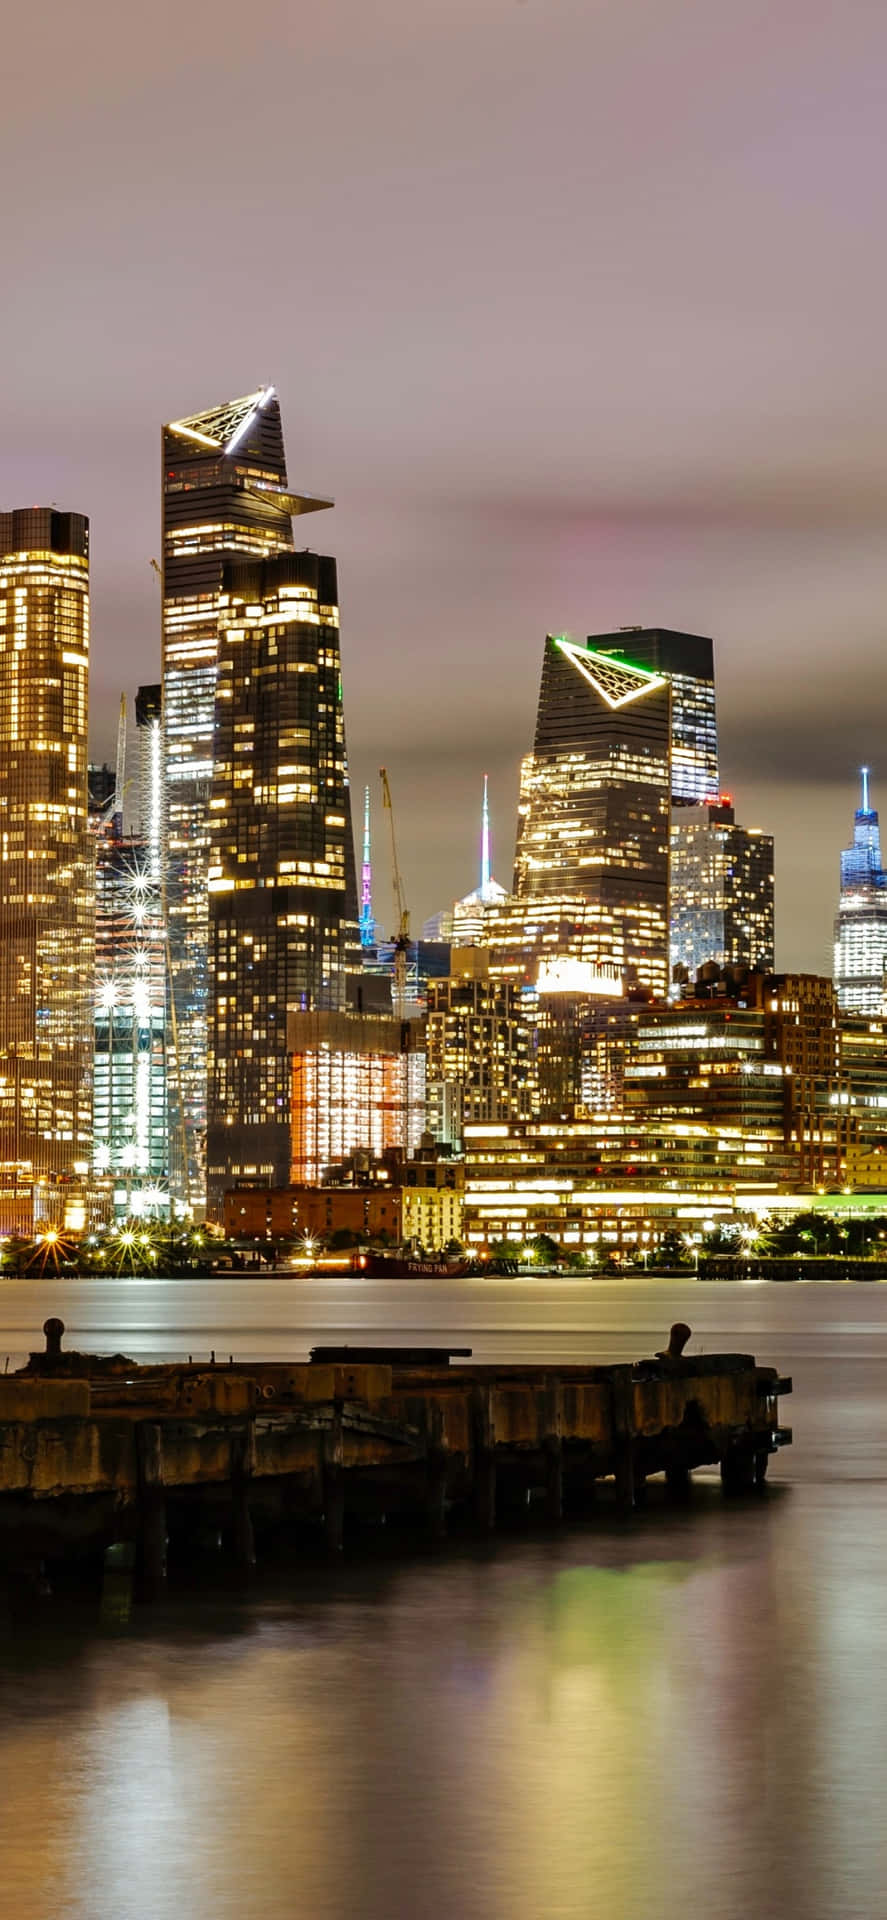 Statuen for Frihedsgudinden, som ser ud over den natte skyline af New York City.